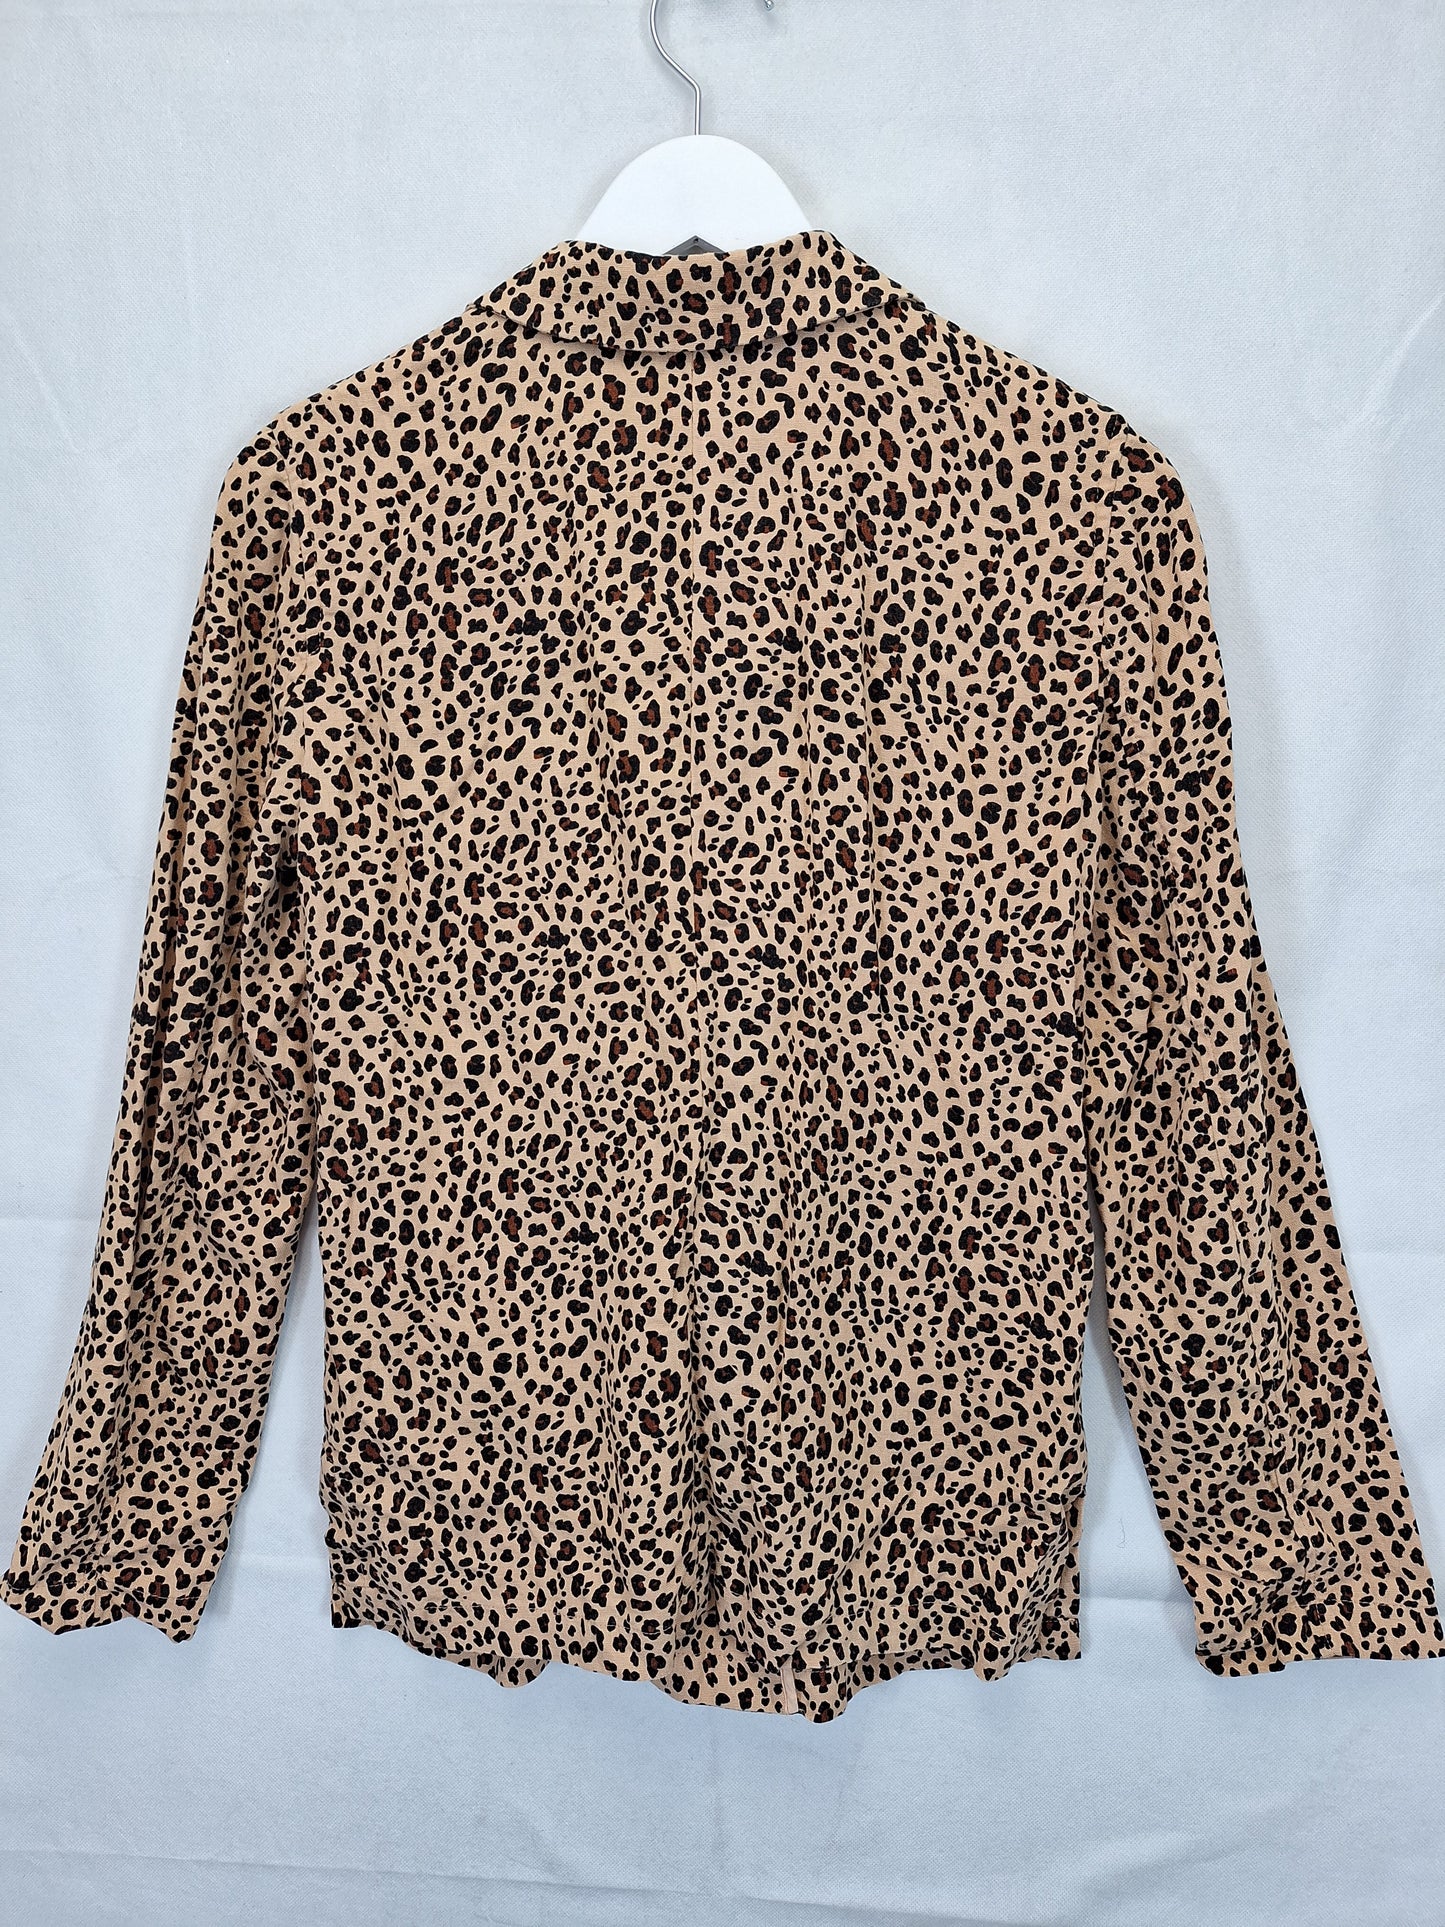 Sportsgirl Cheetah Blazer Size 8 by SwapUp-Online Second Hand Store-Online Thrift Store